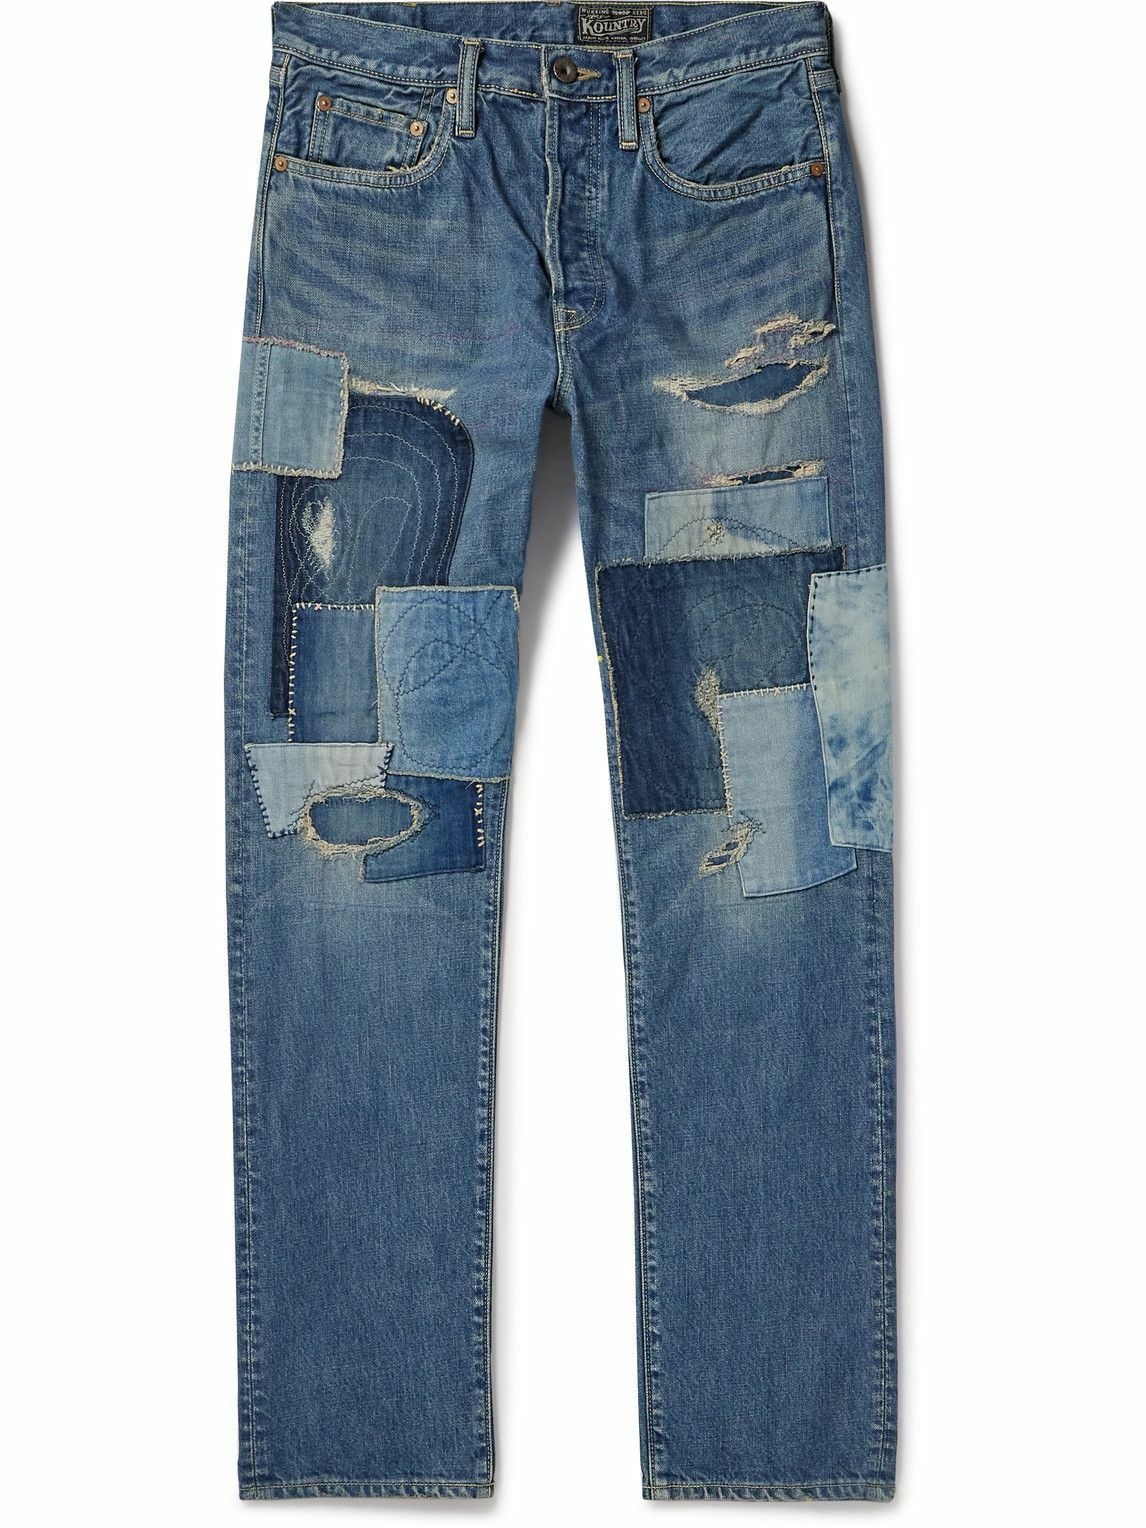 MU3 Backless Jeans Top – YAYUKATA